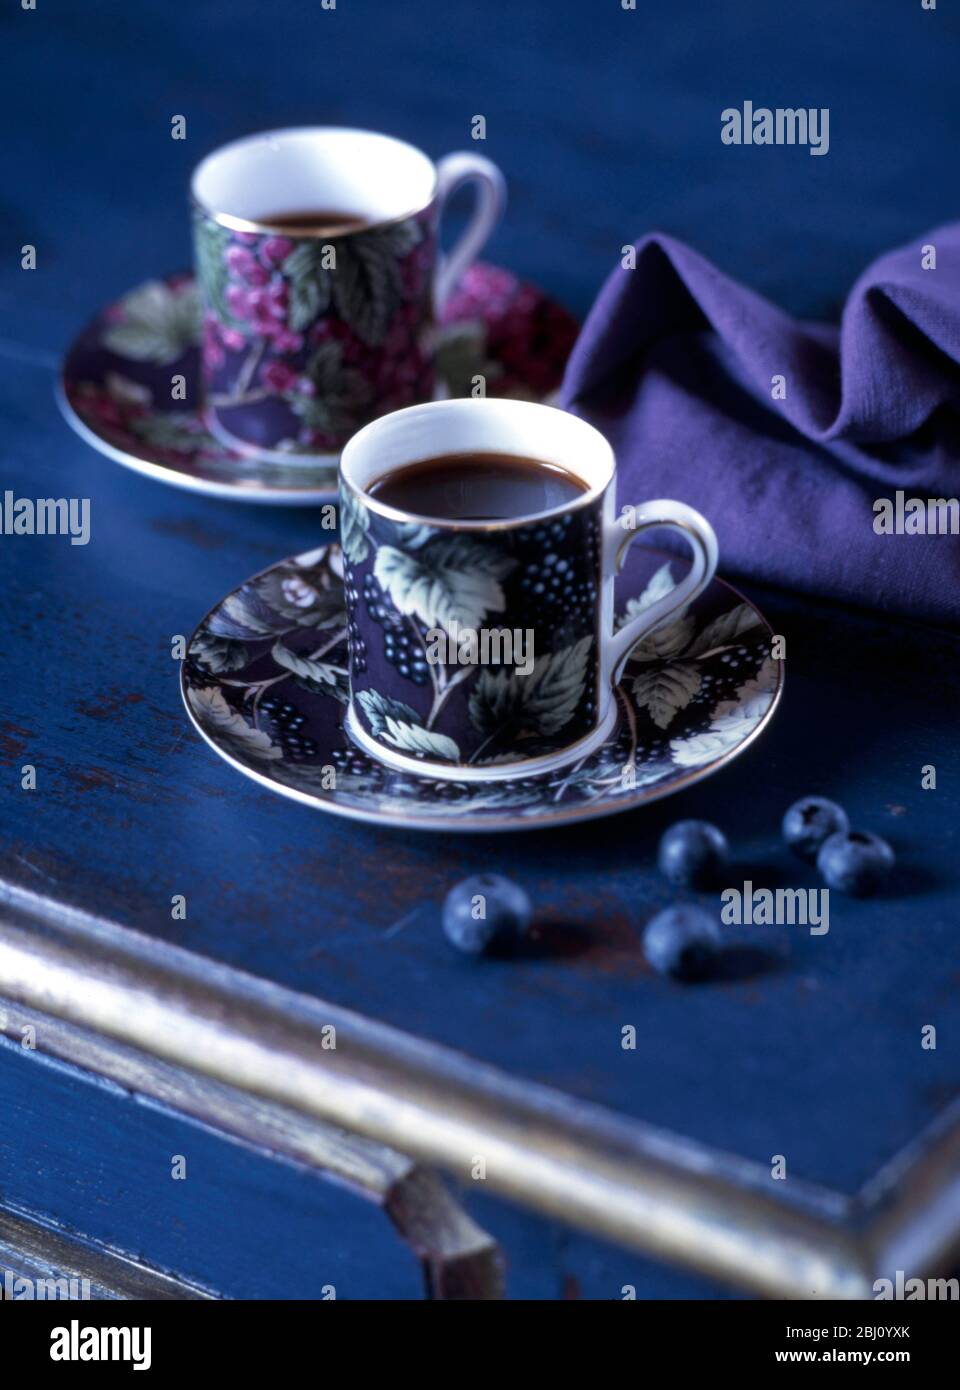 Ein Paar dekorierte Kaffeetassen auf dunkelblauer Oberfläche mit Serviette und Blaubeeren - Stockfoto